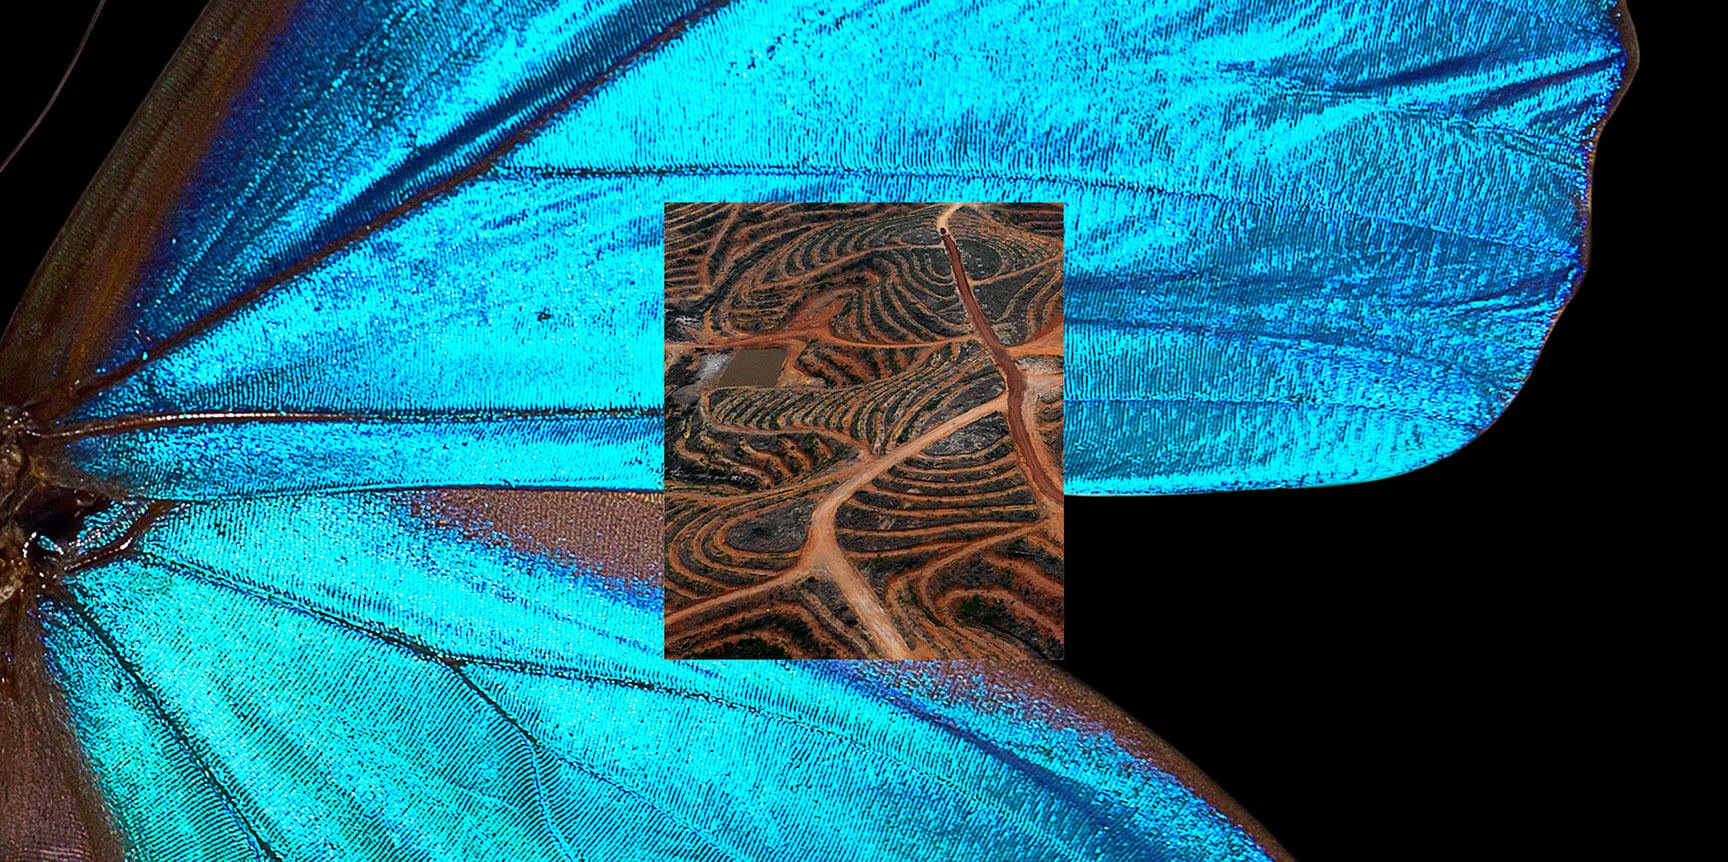 Key Visual der ersten Ausstellung im extract. Zu sehen sind ein blauer Schmetterlingsflügel und eine dürre Landschaft.